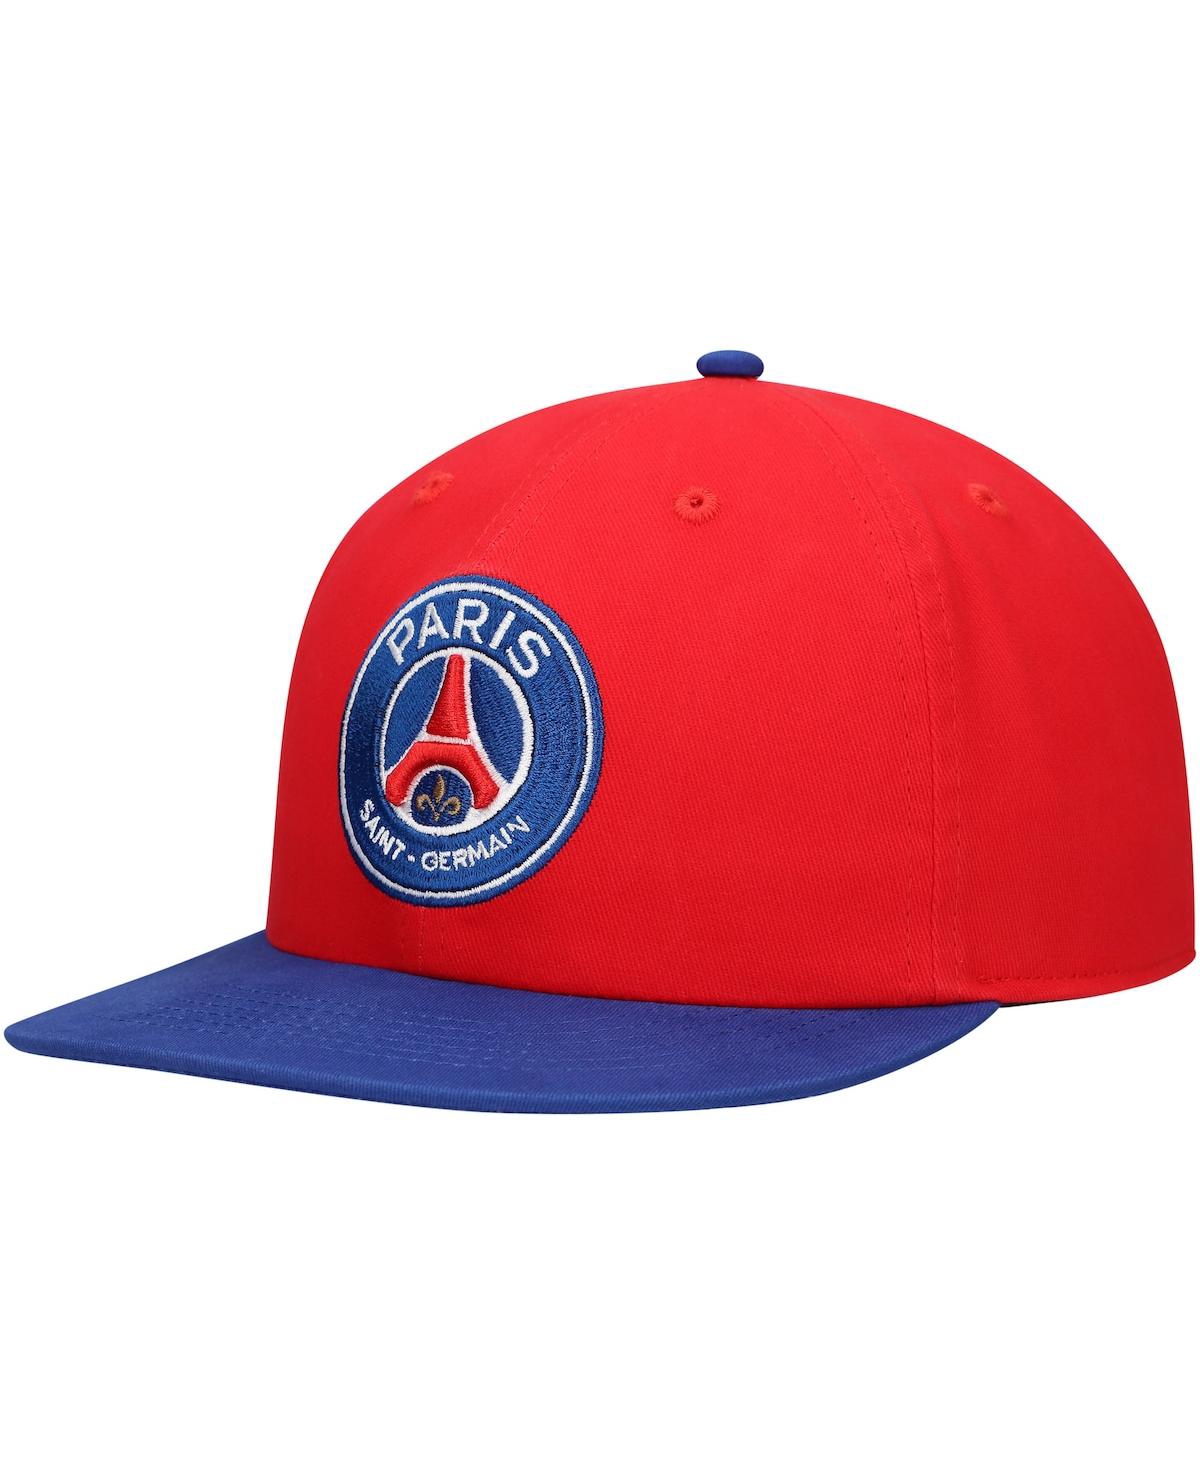 Men's Red Paris Saint-Germain Swingman Snapback Hat - Red